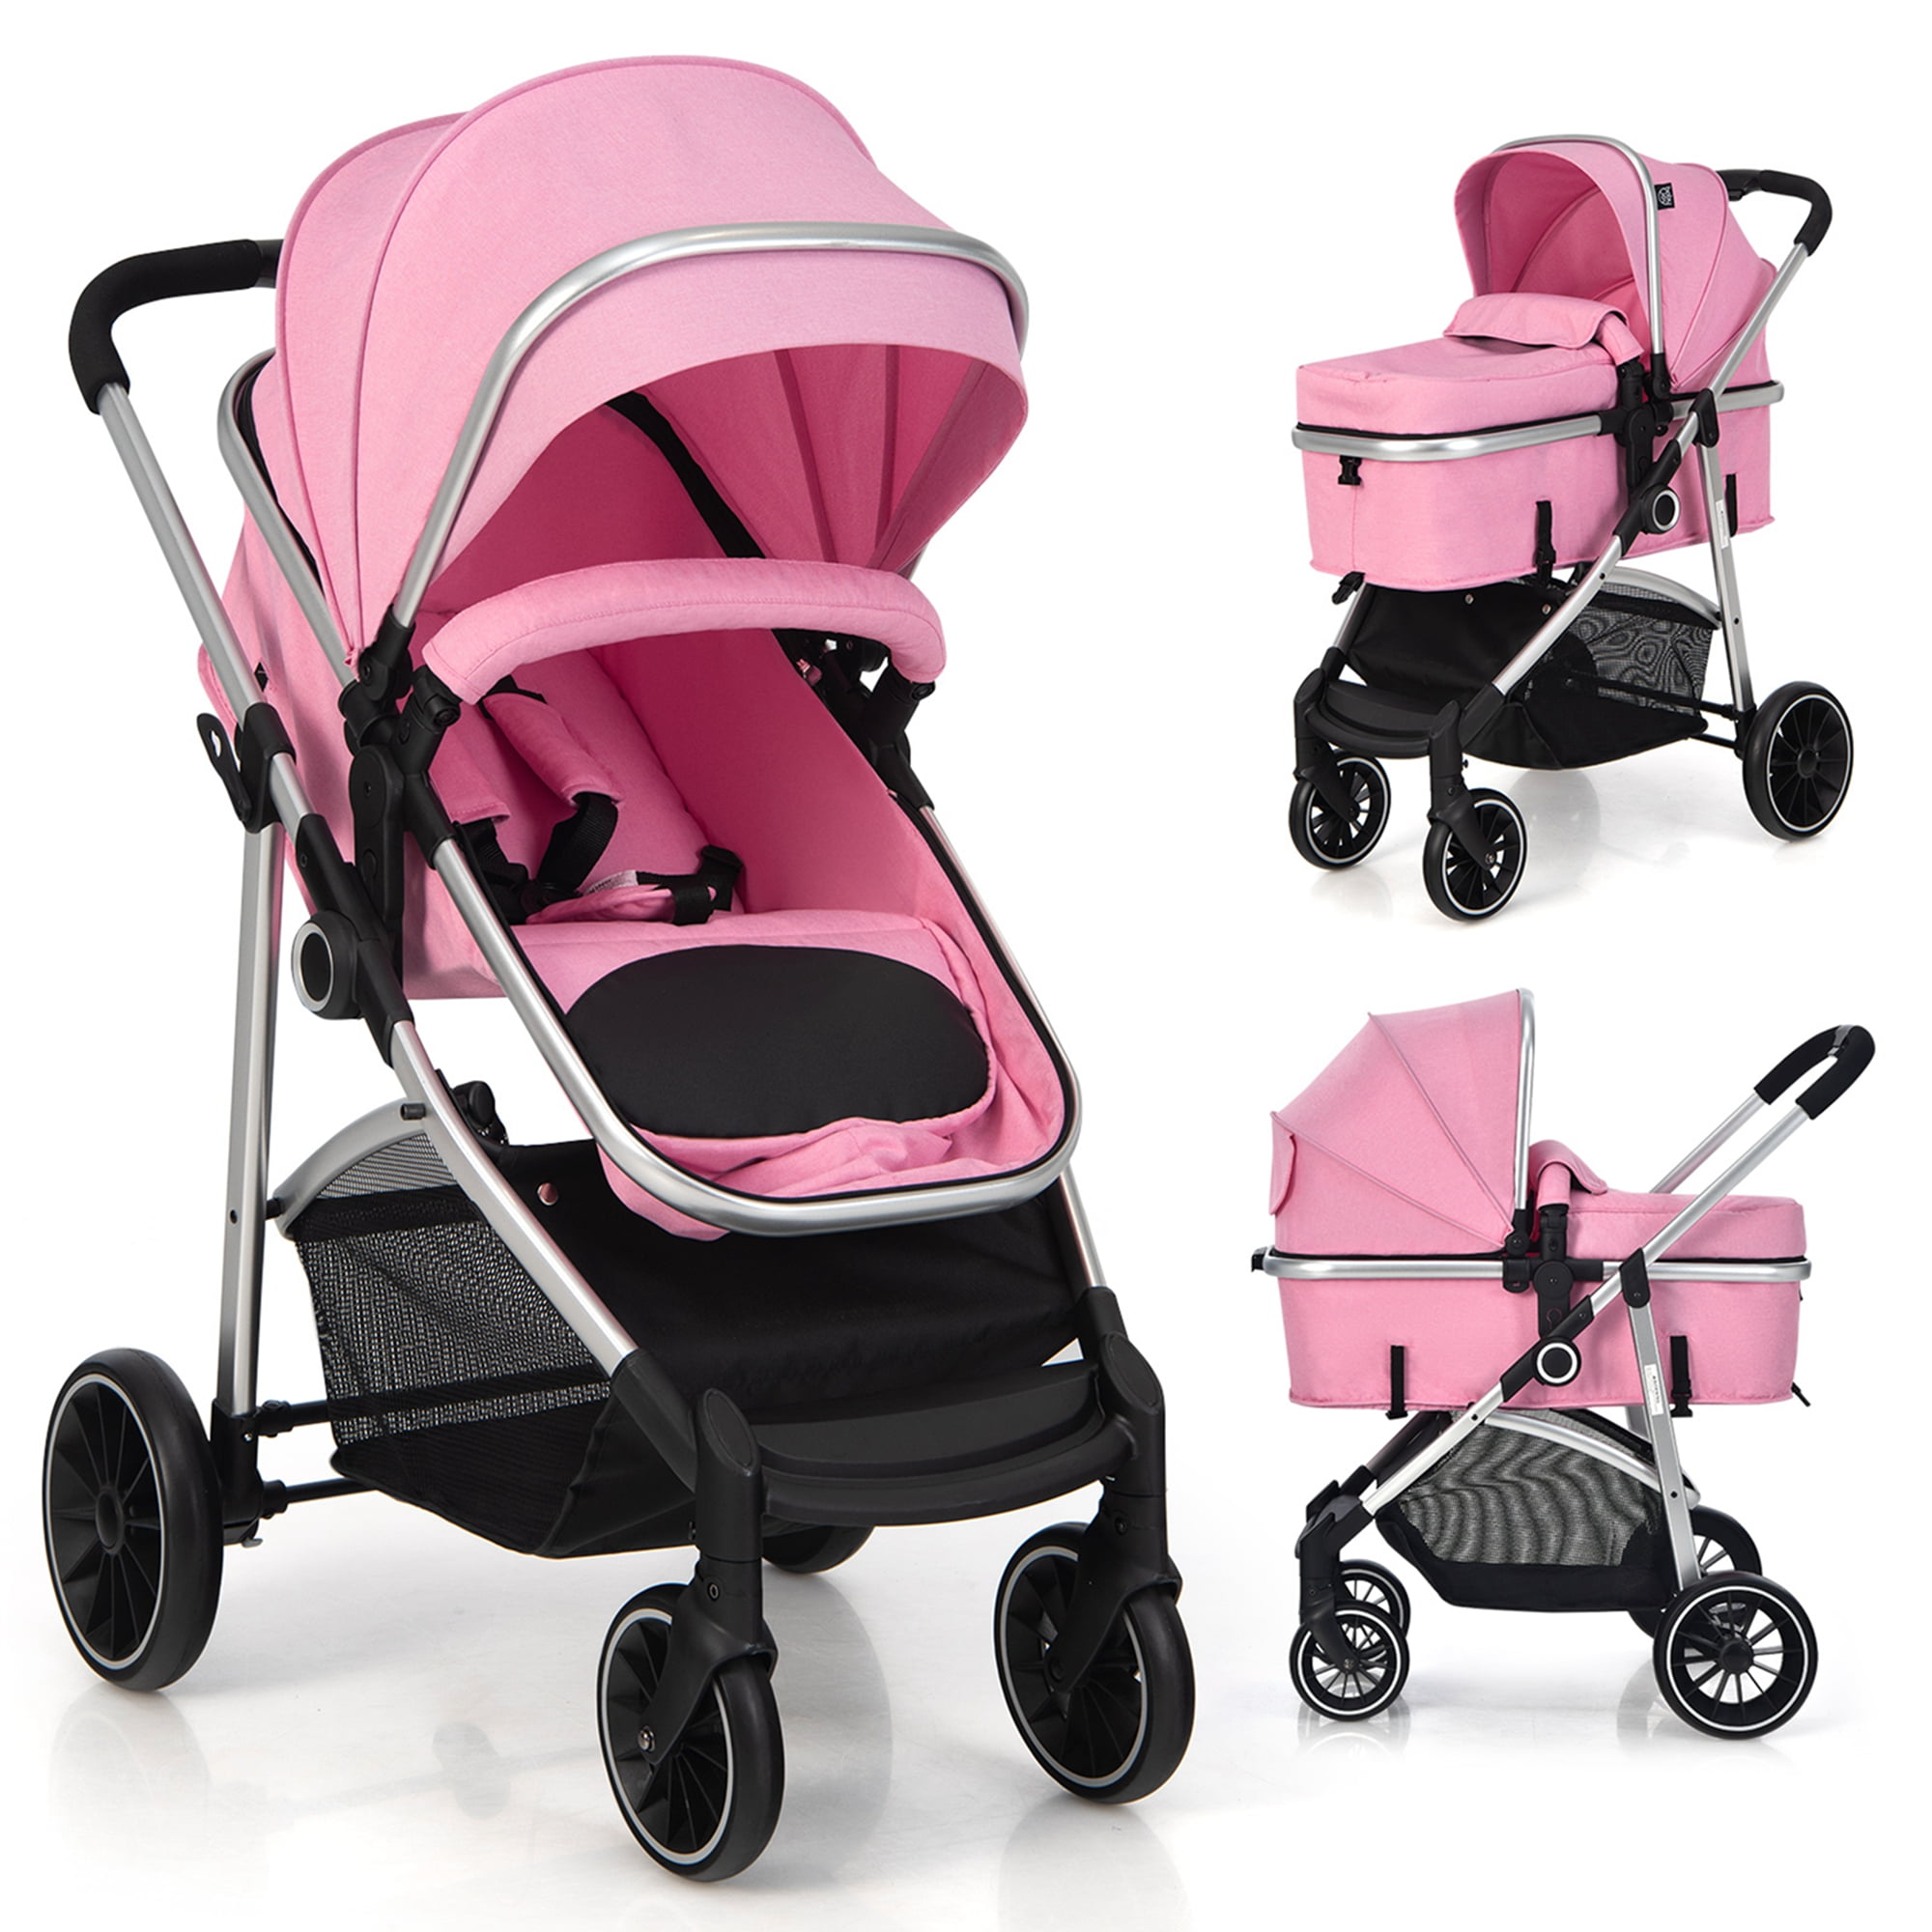 2 in 1 Convertible Baby Stroller High Landscape Infant Stroller Grey 